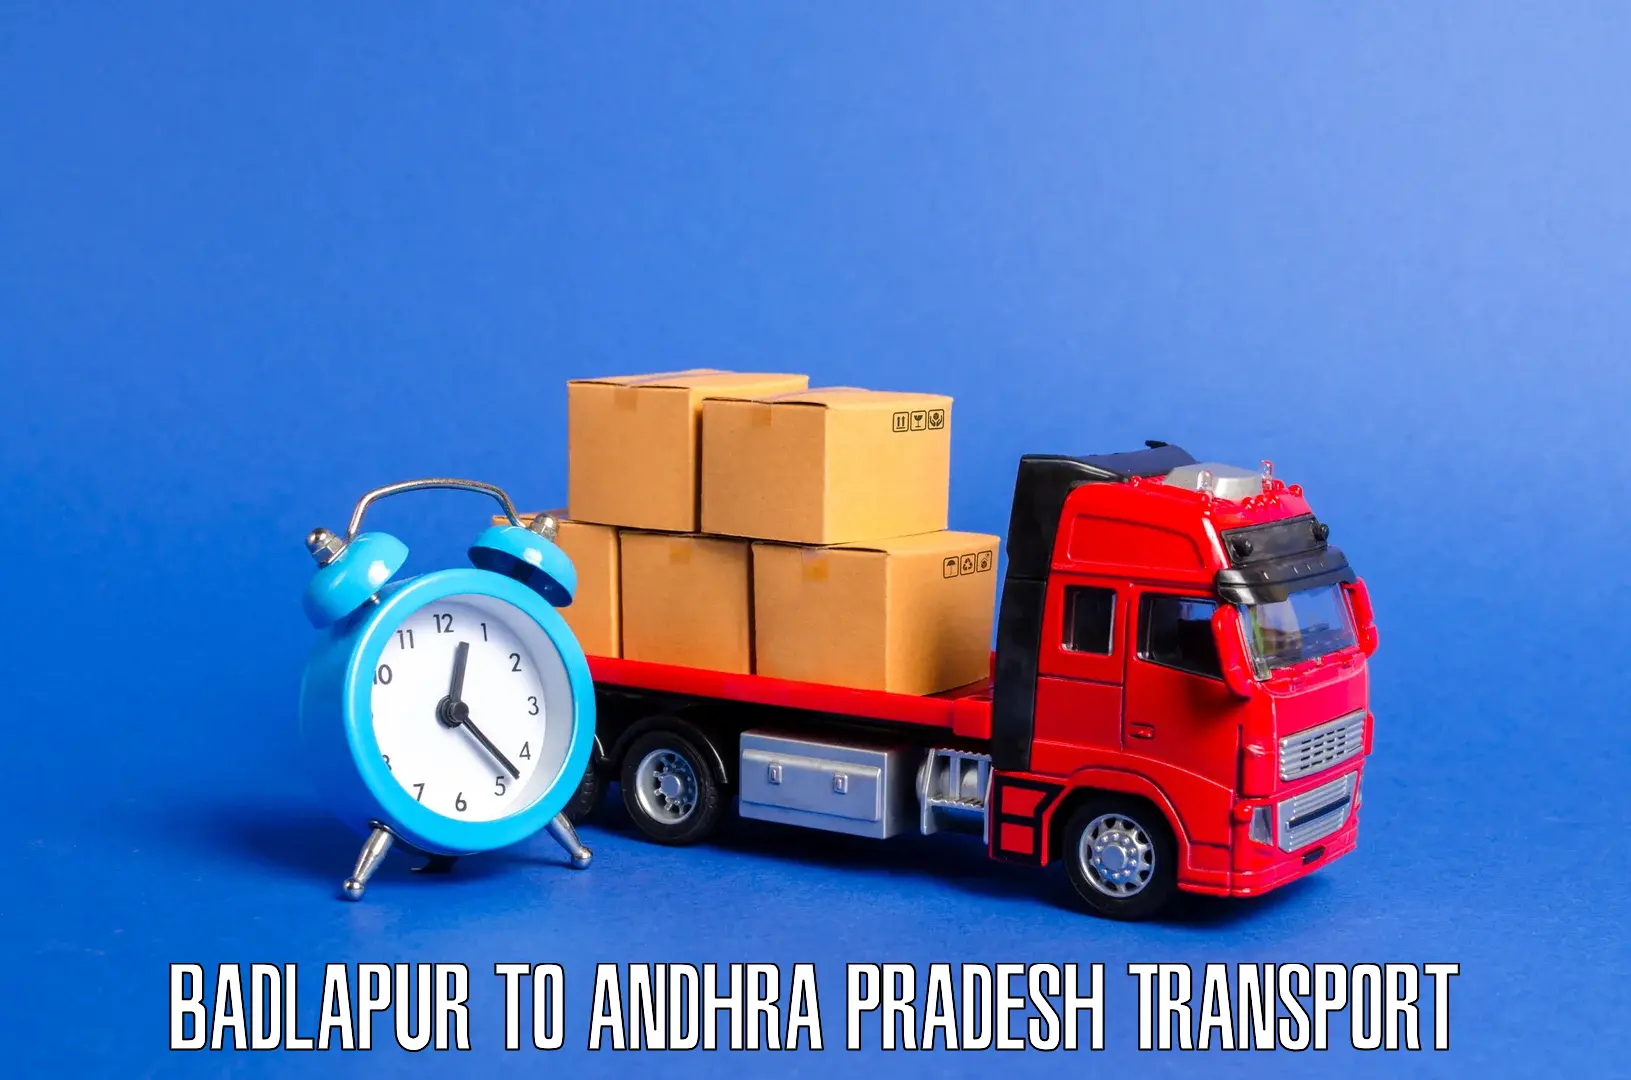 Daily transport service in Badlapur to Polavaram